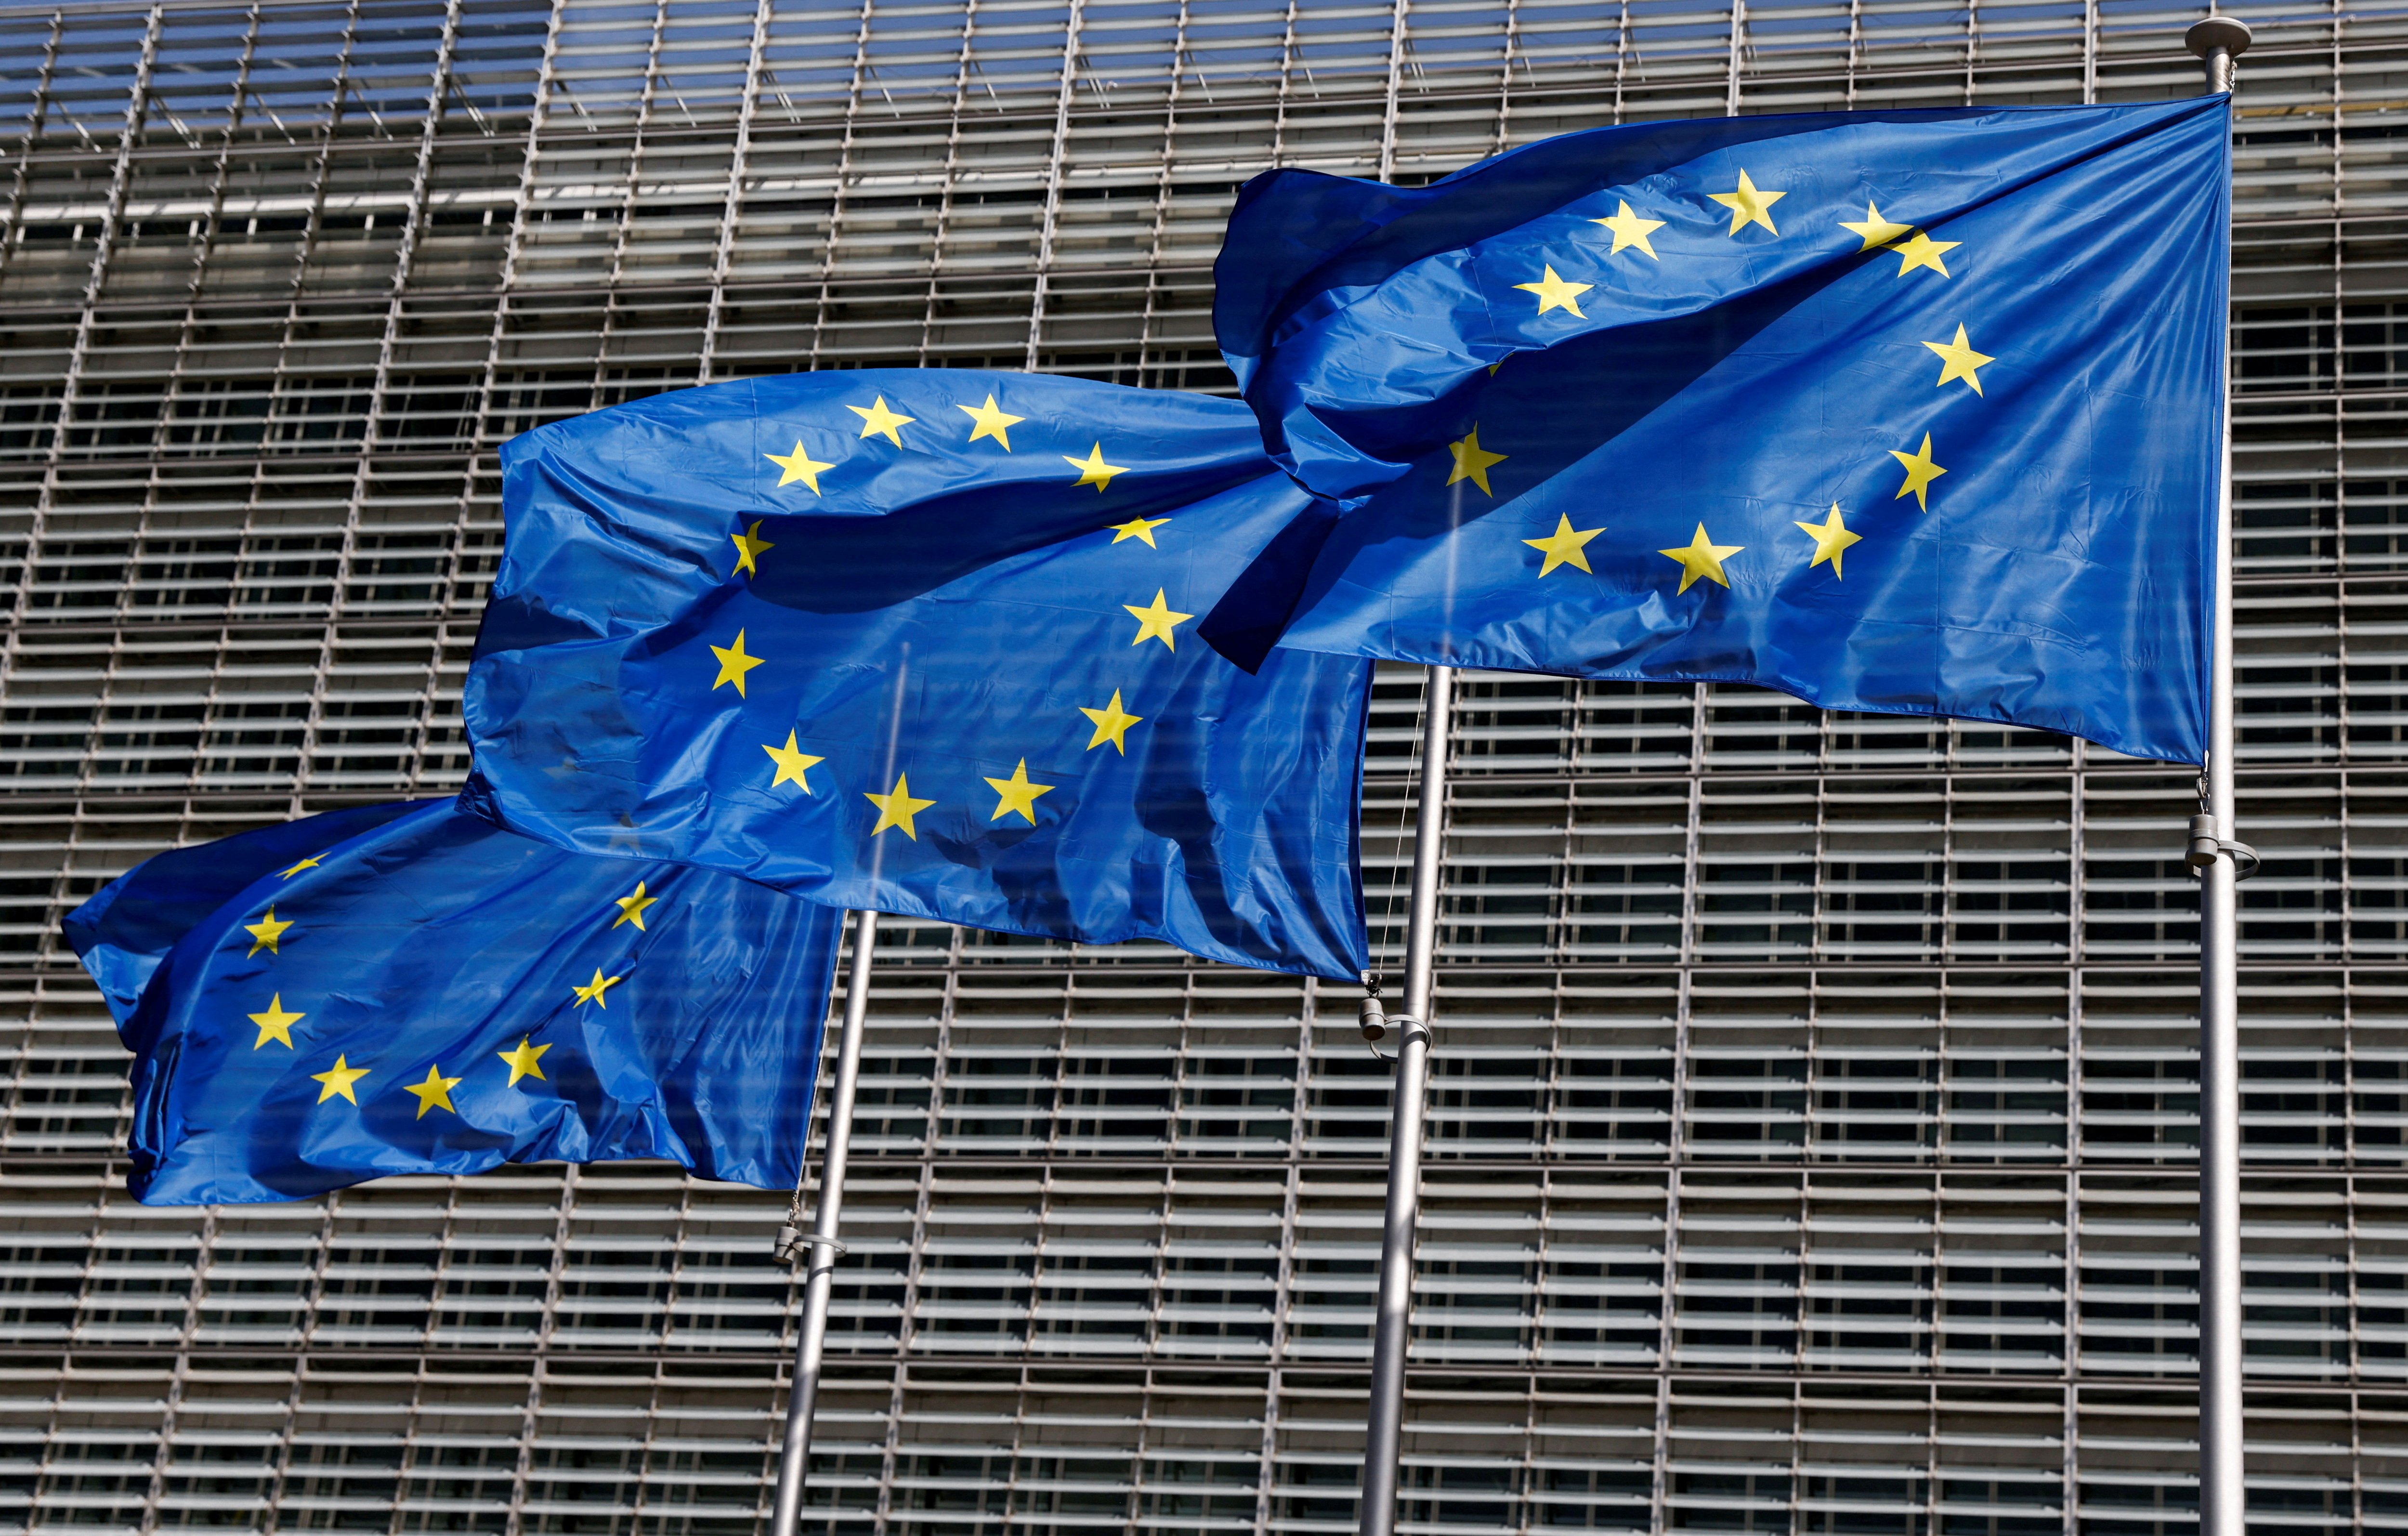 Les drapeaux de l'Union européenne flottent devant le siège de la Commission européenne à Bruxelles